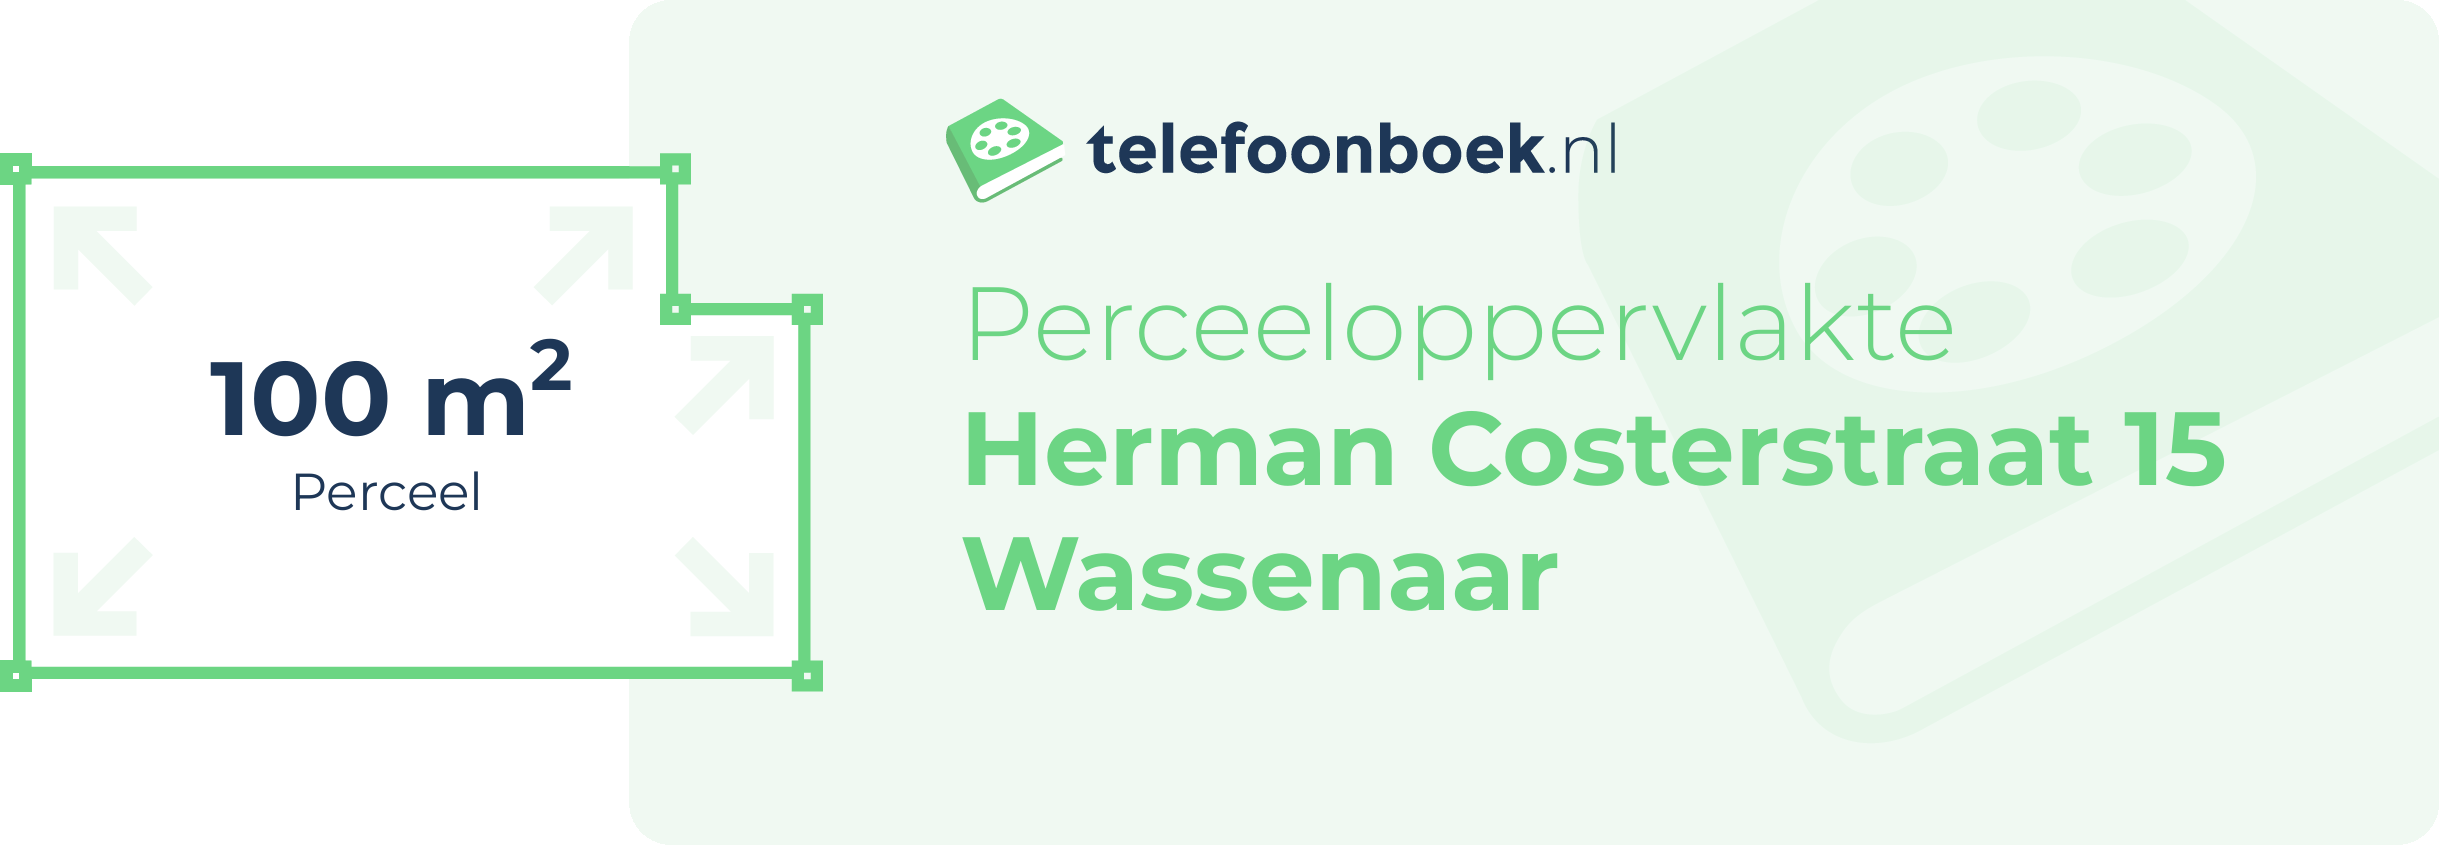 Perceeloppervlakte Herman Costerstraat 15 Wassenaar